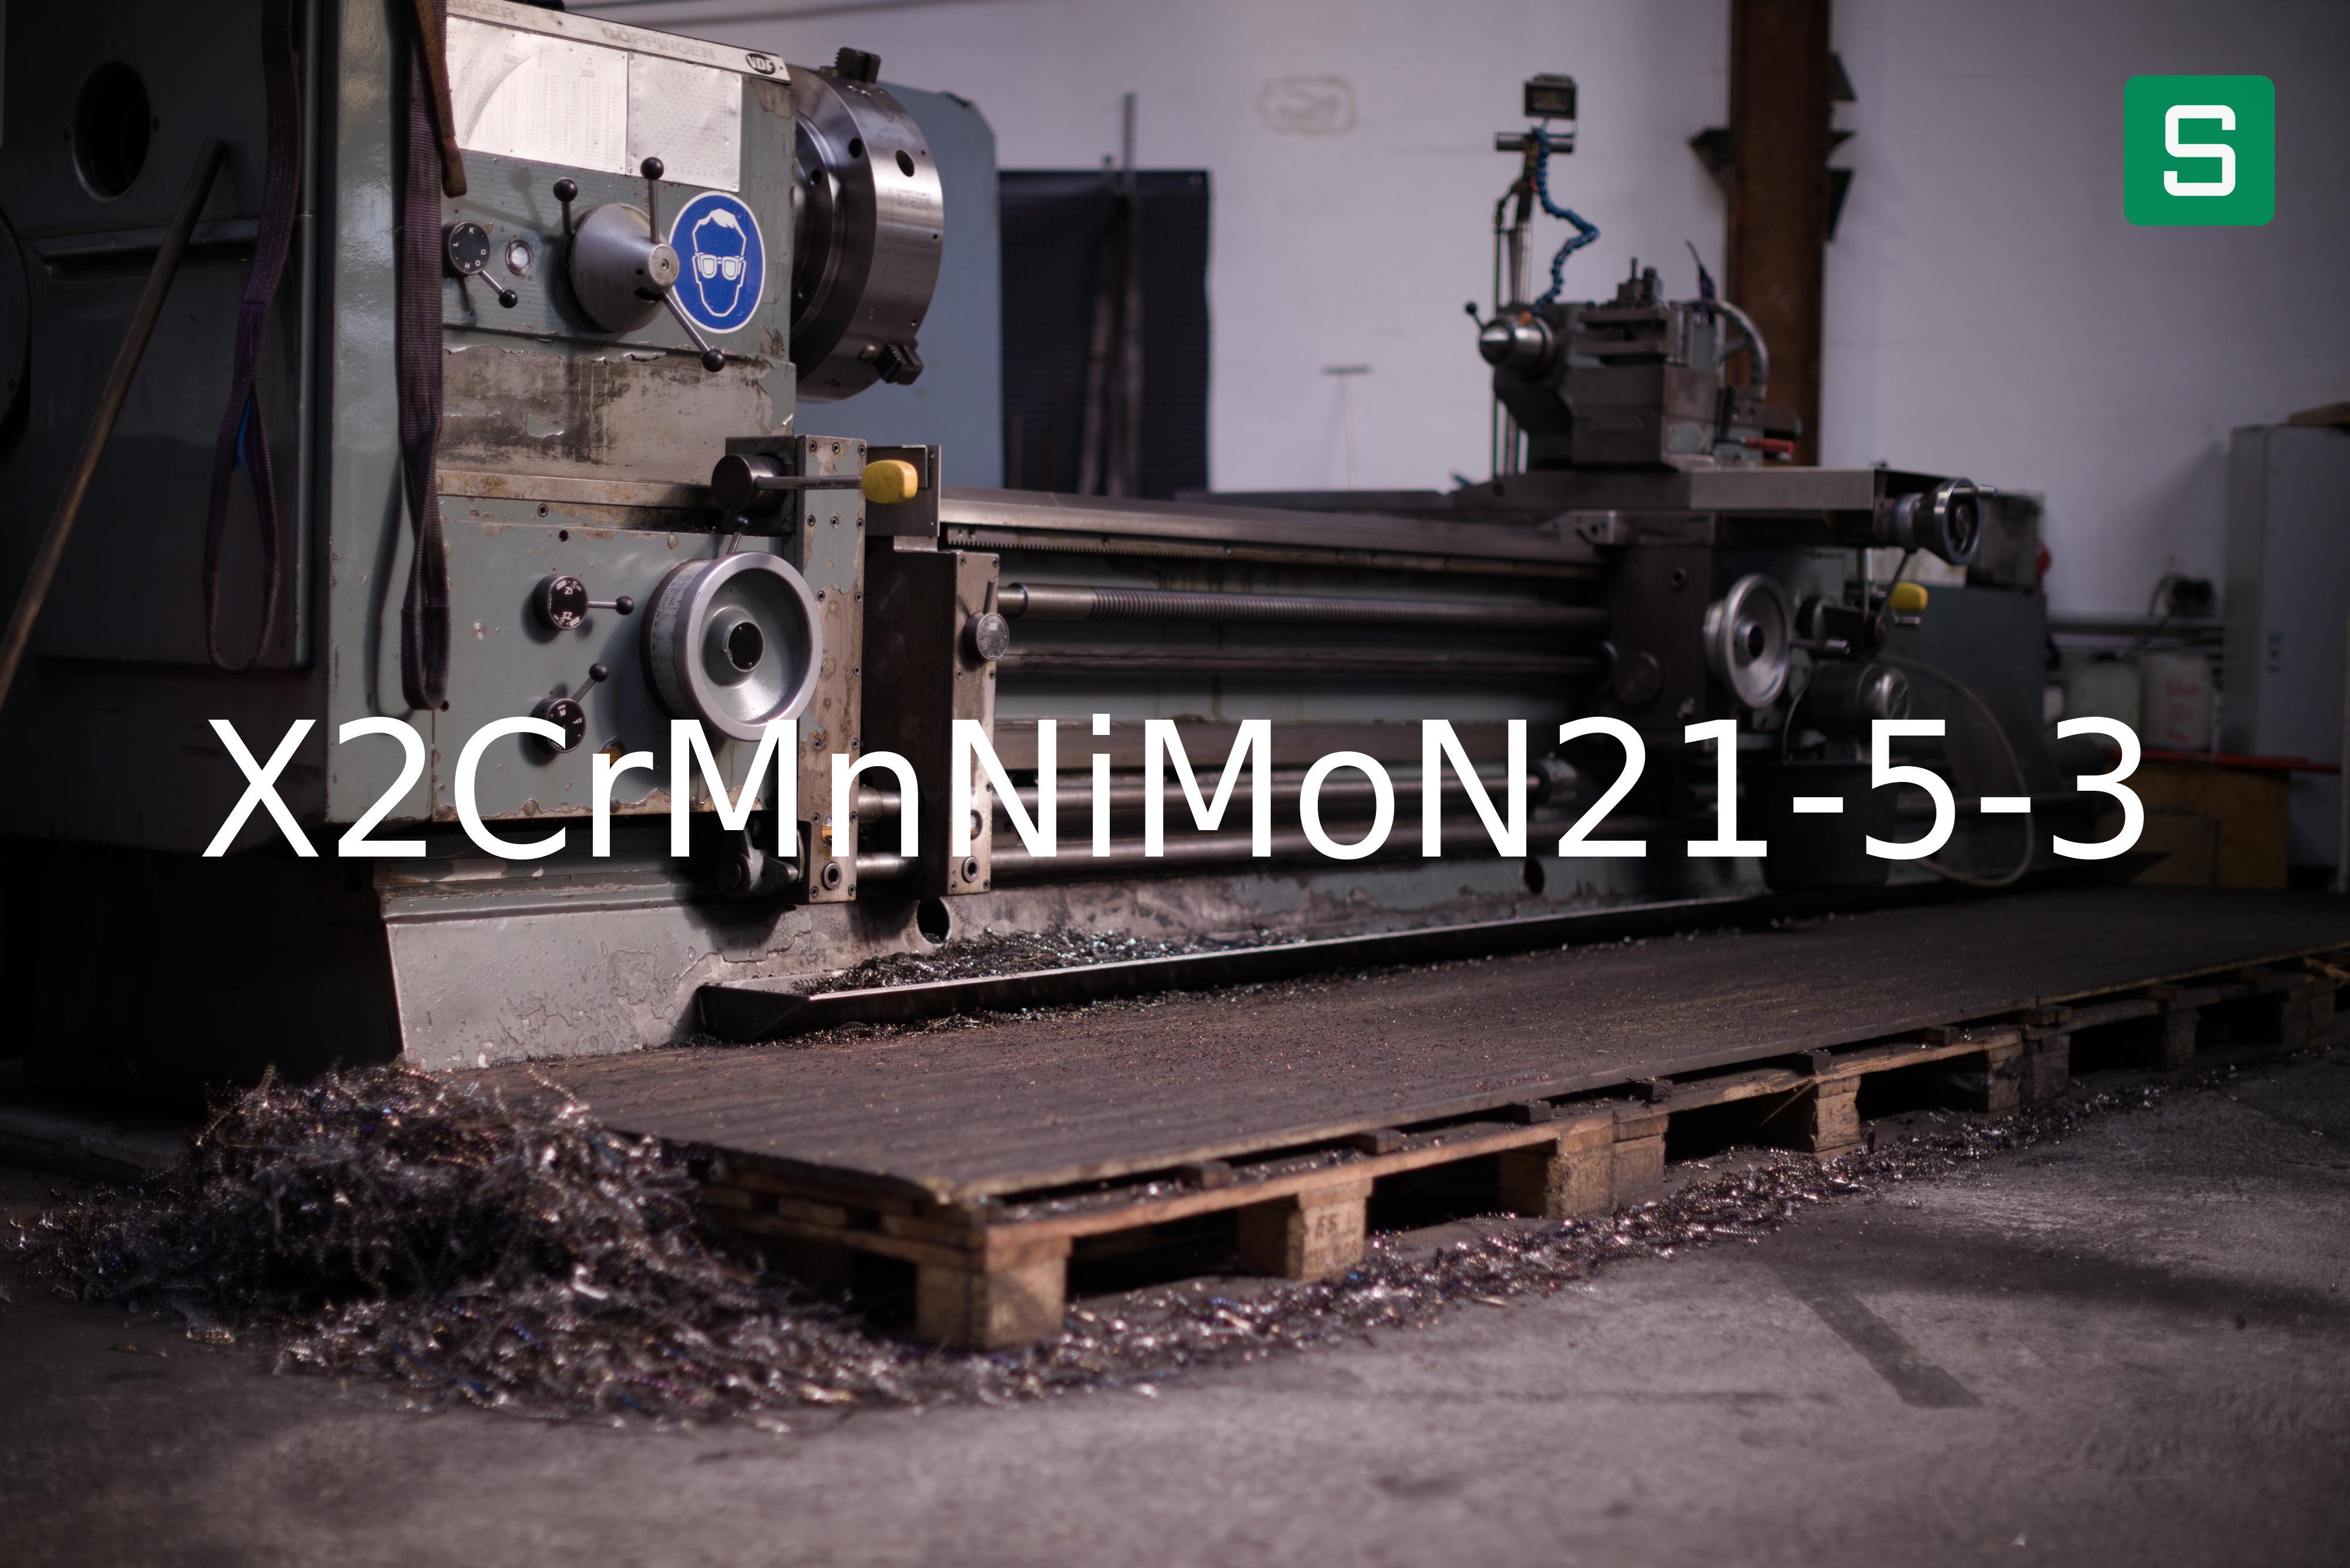 Steel Material: X2CrMnNiMoN21-5-3